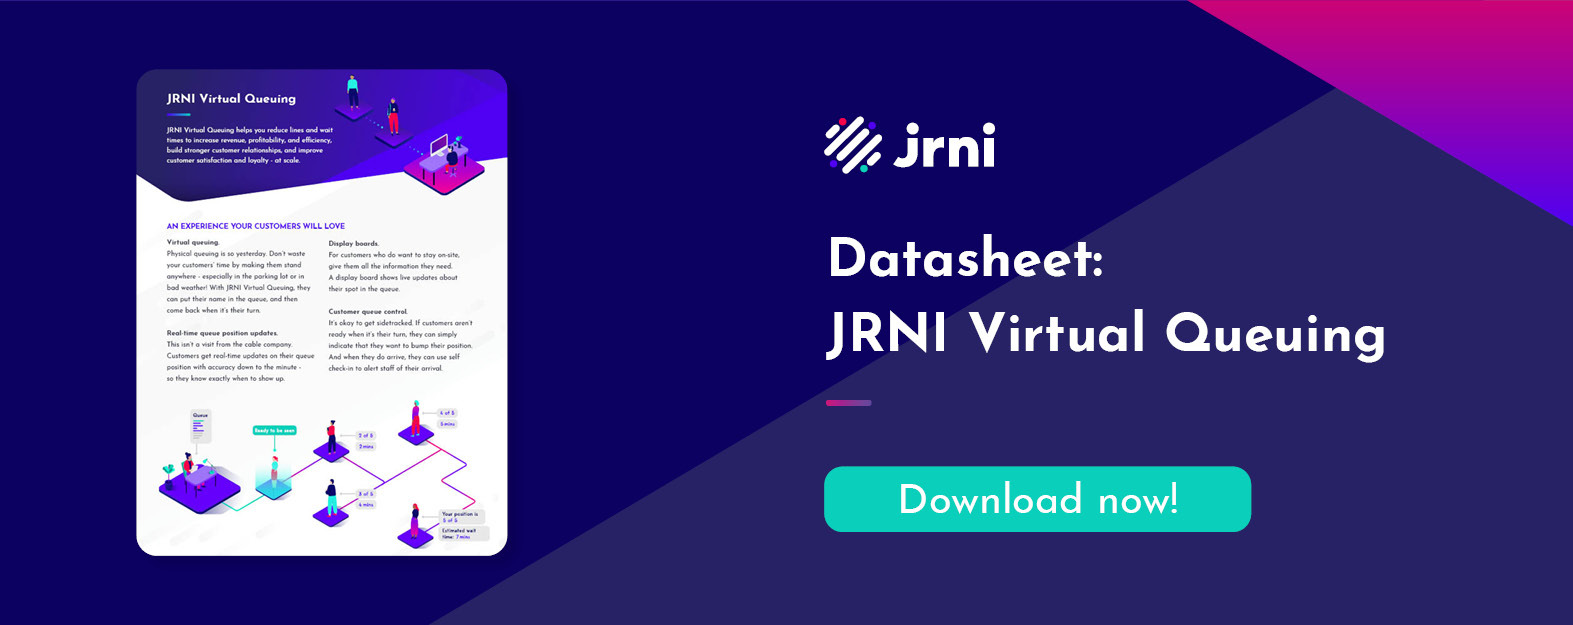 Download the datasheet: JRNI Virtual Queuing